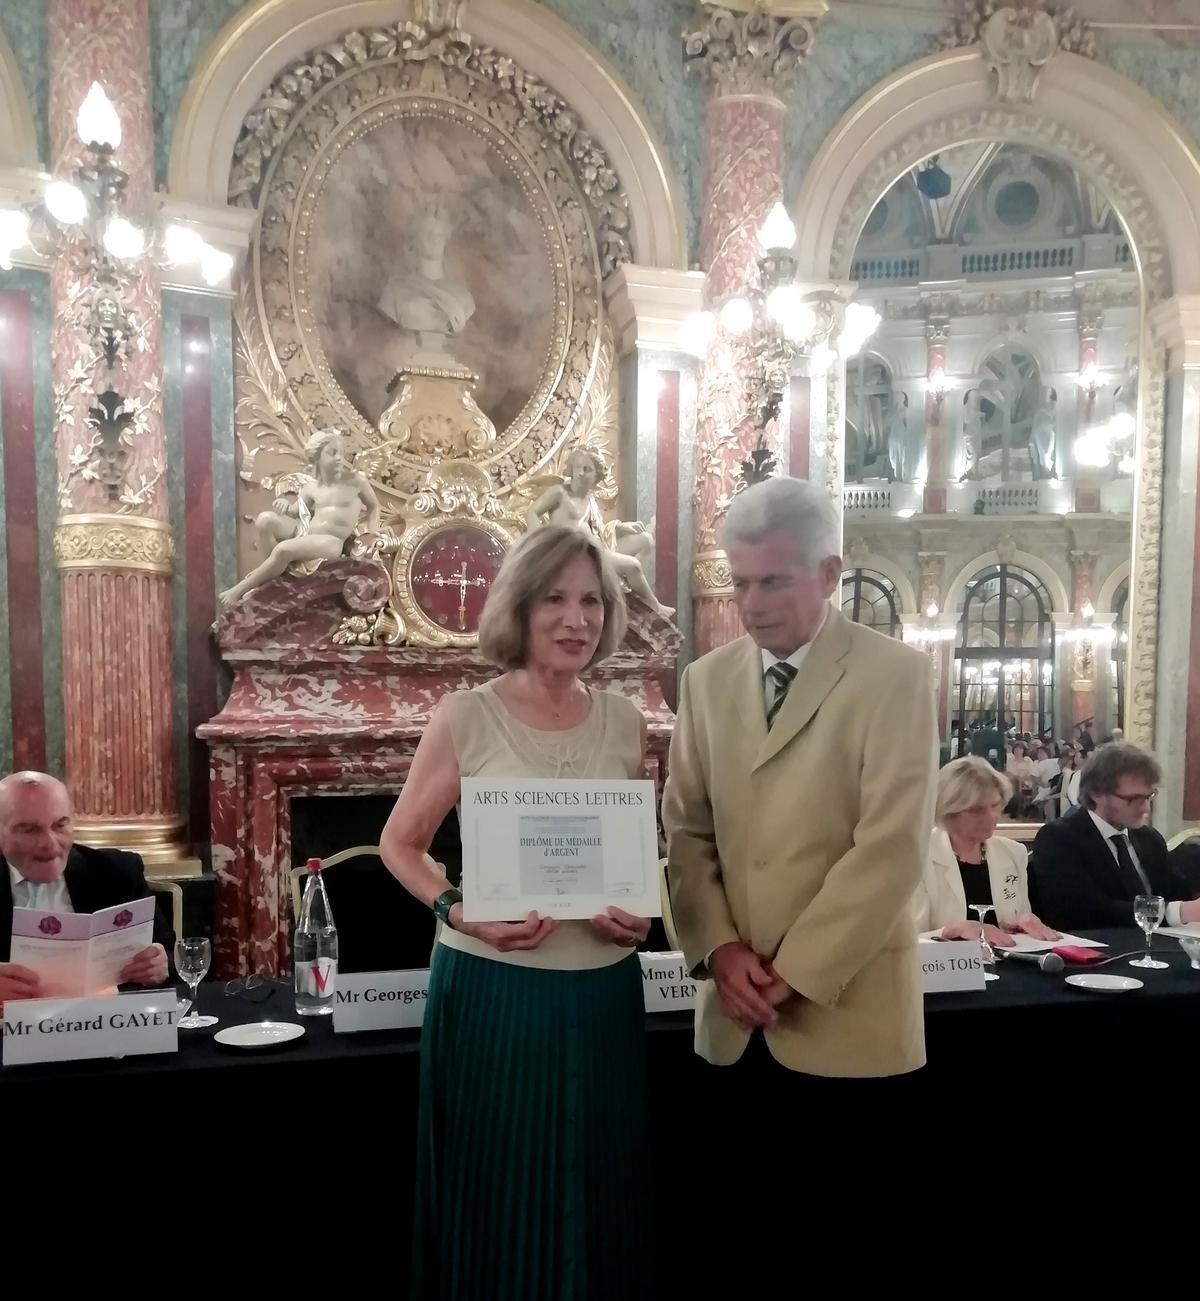 La cacereña recibe la medalla de plata de la Real Academia de Artes de París.